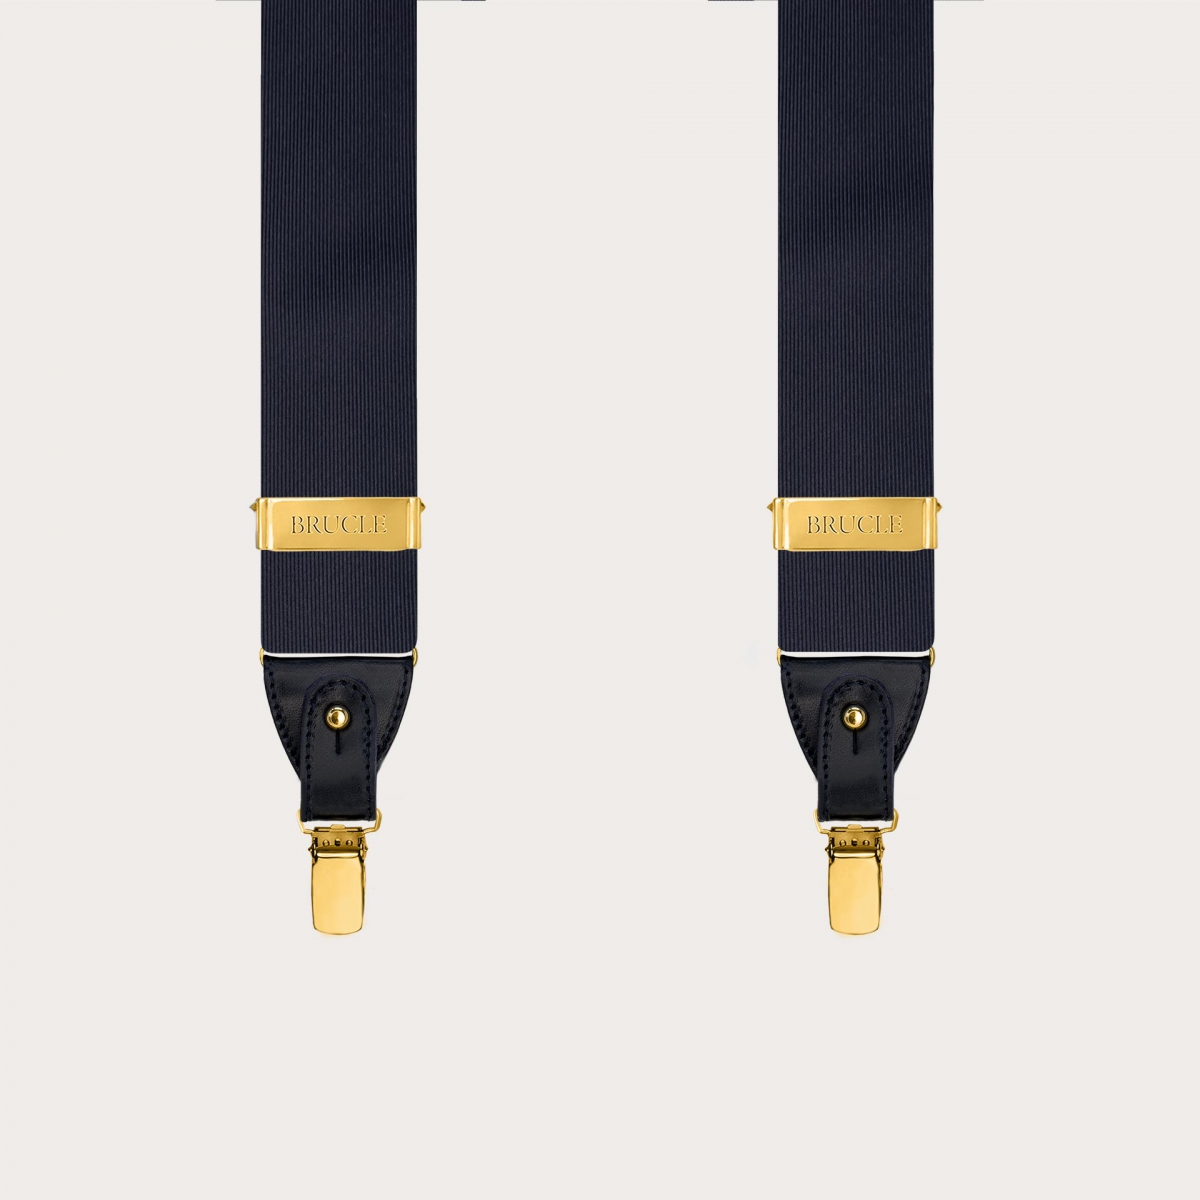 Bretelles pour homme en soie bleu marine avec clips dorés